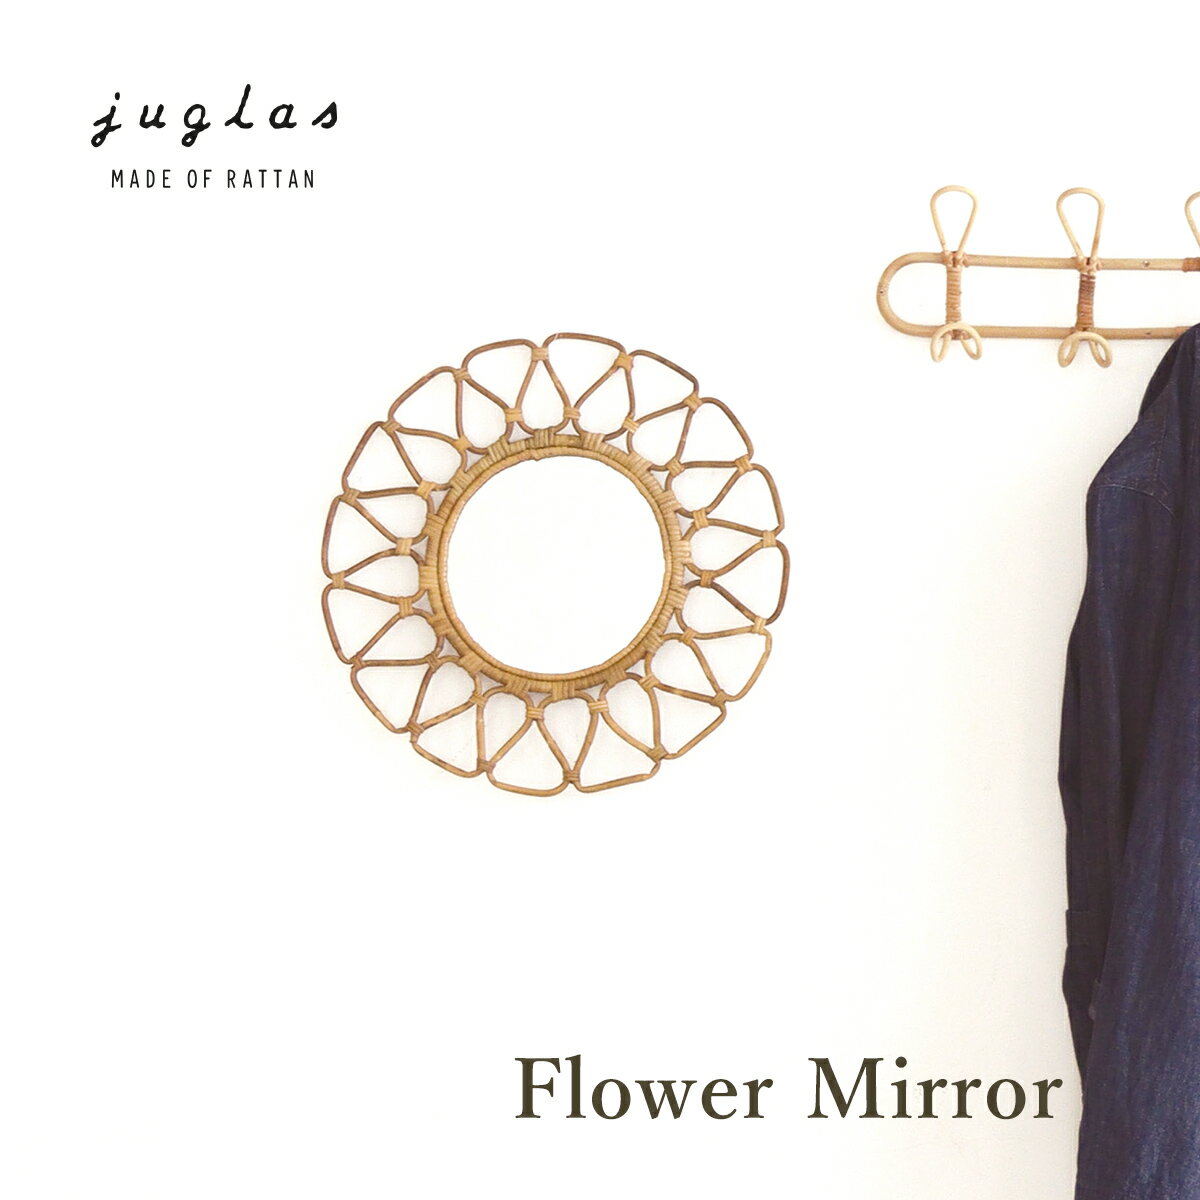 JUGLAS ユグラ フラワーミラー ウォールミラー フェイスミラー 鏡 かがみ ミラー 壁掛け 花 フラワー 丸形 円形 ラタ…